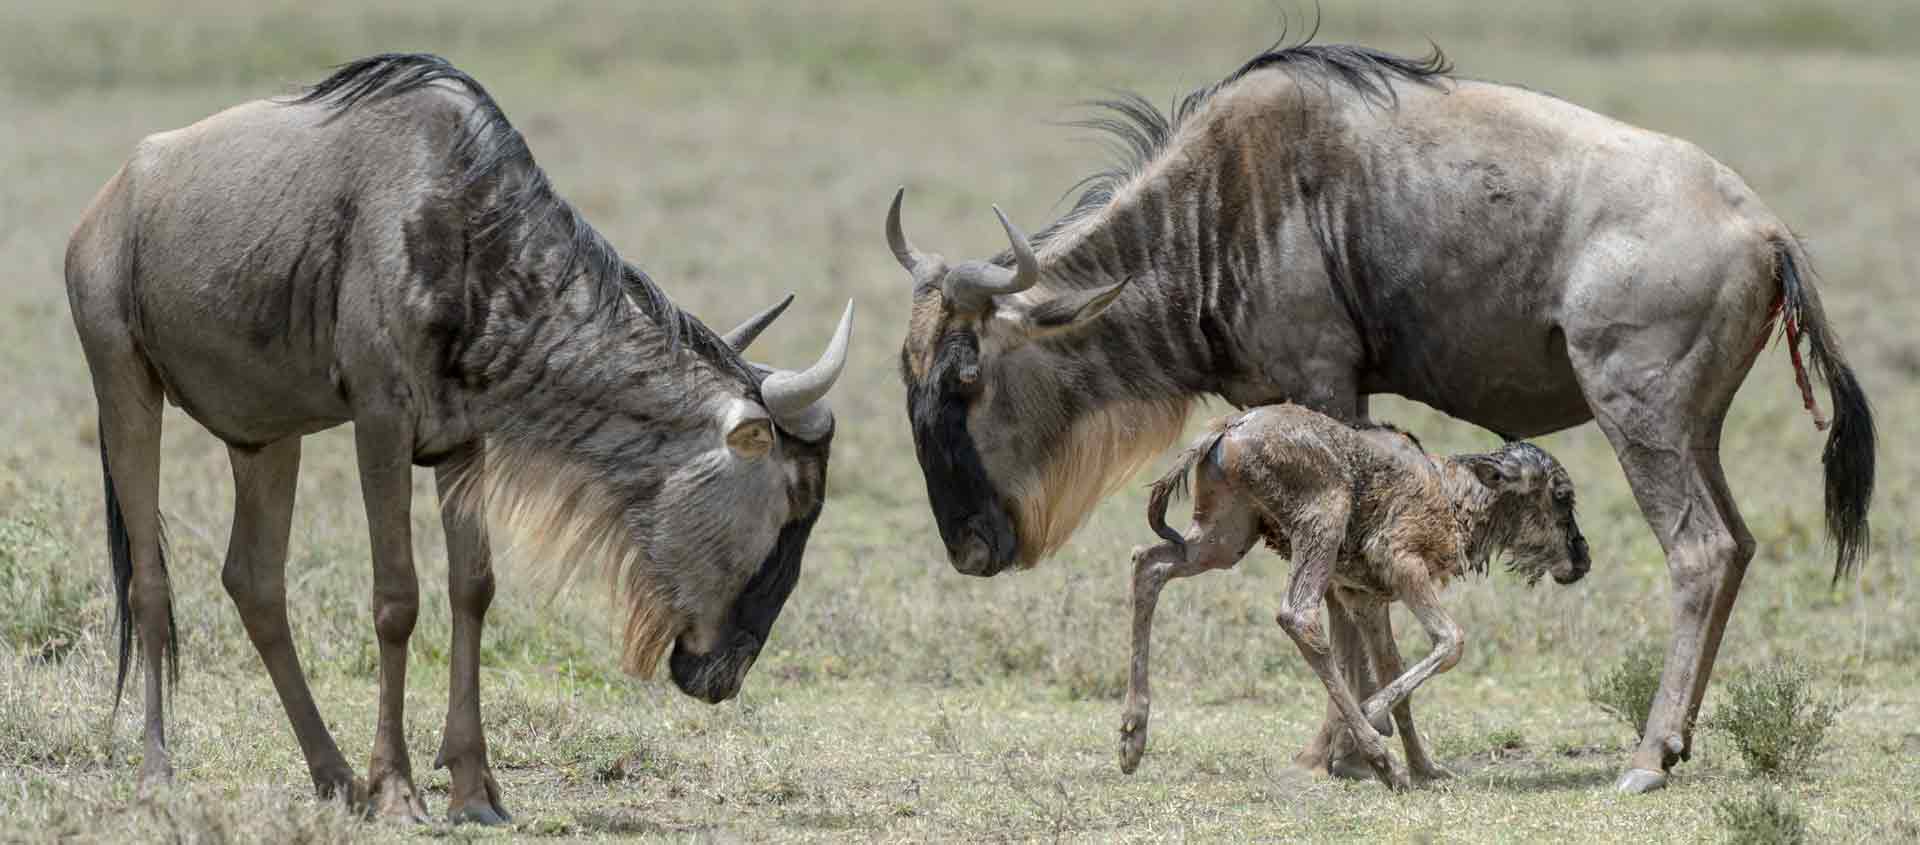 Tanzania safari of the Serengeti and Mahale slide showing wildebeest with newborn